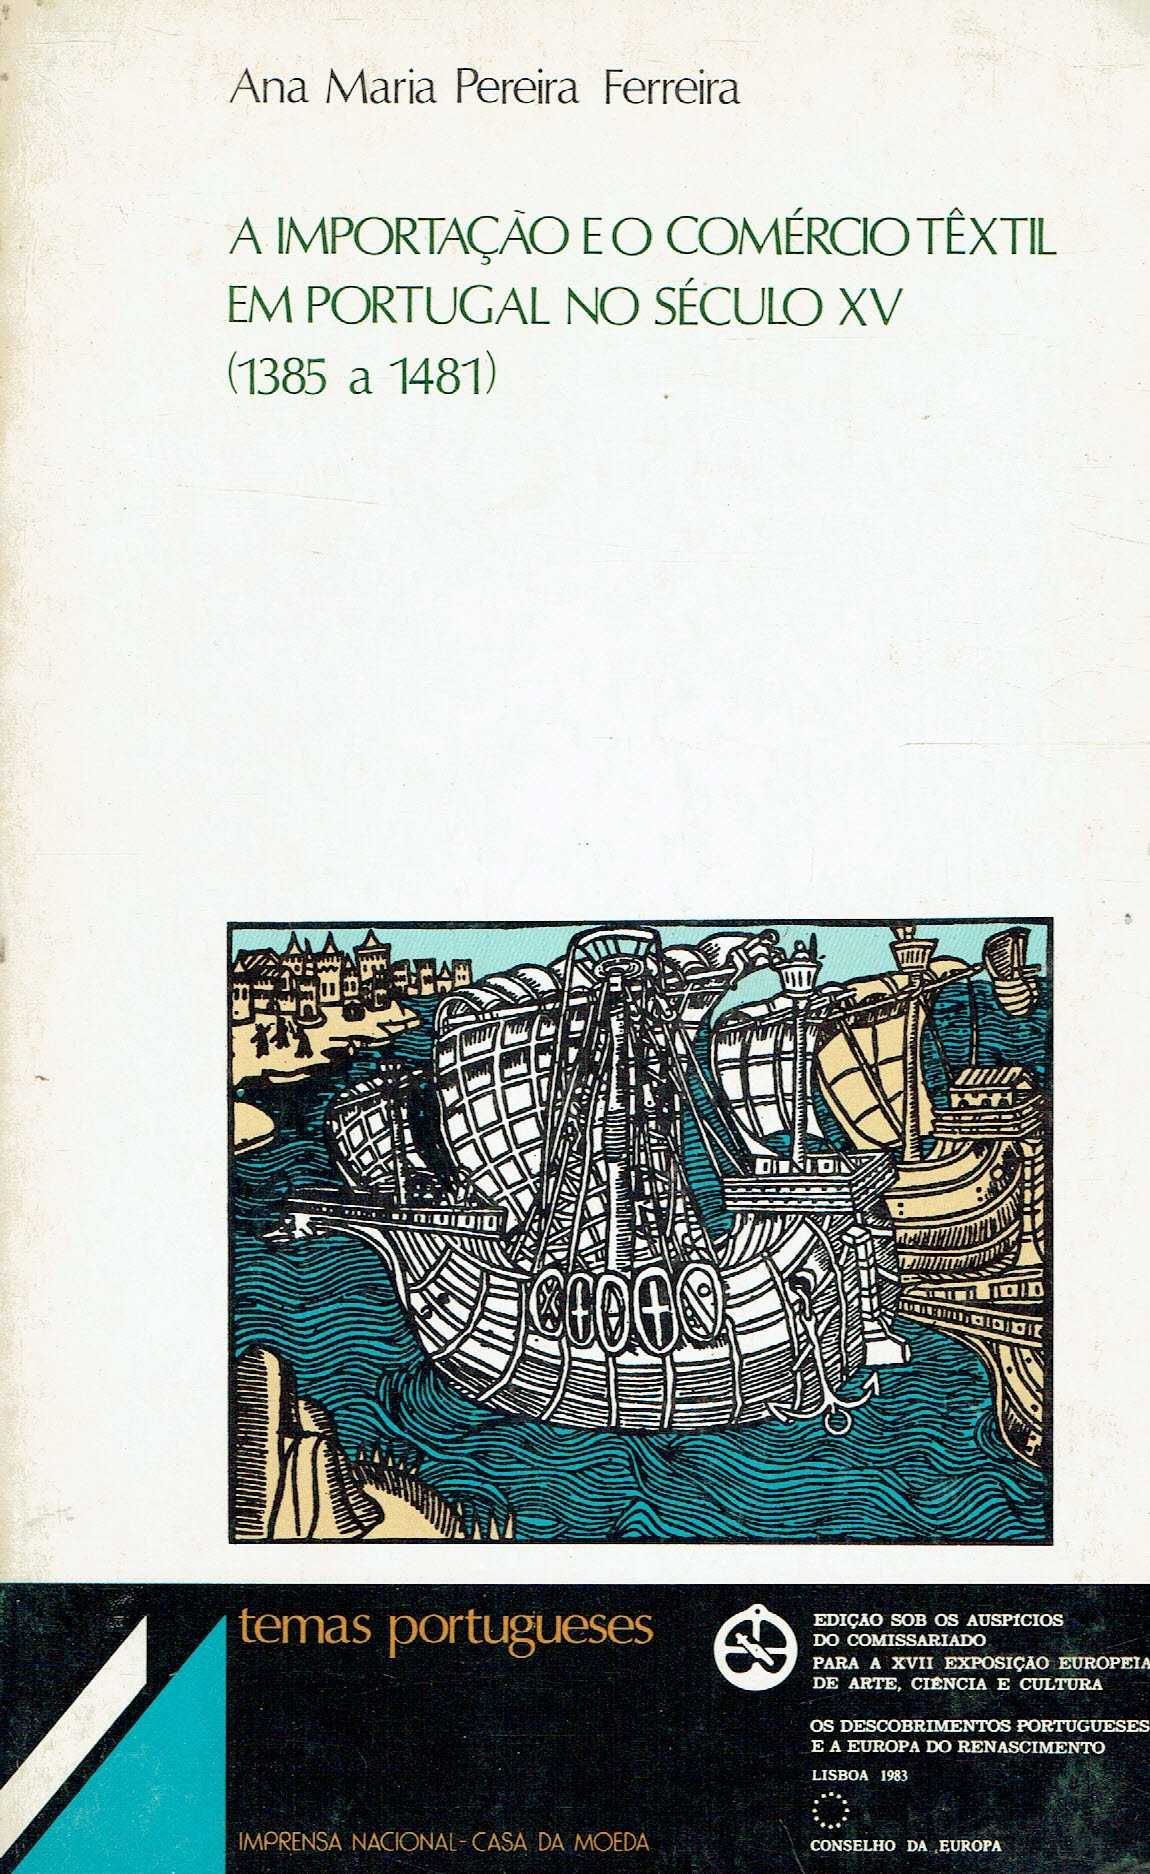 14634
A importação e o comércio têxtil em Portugal no século XV